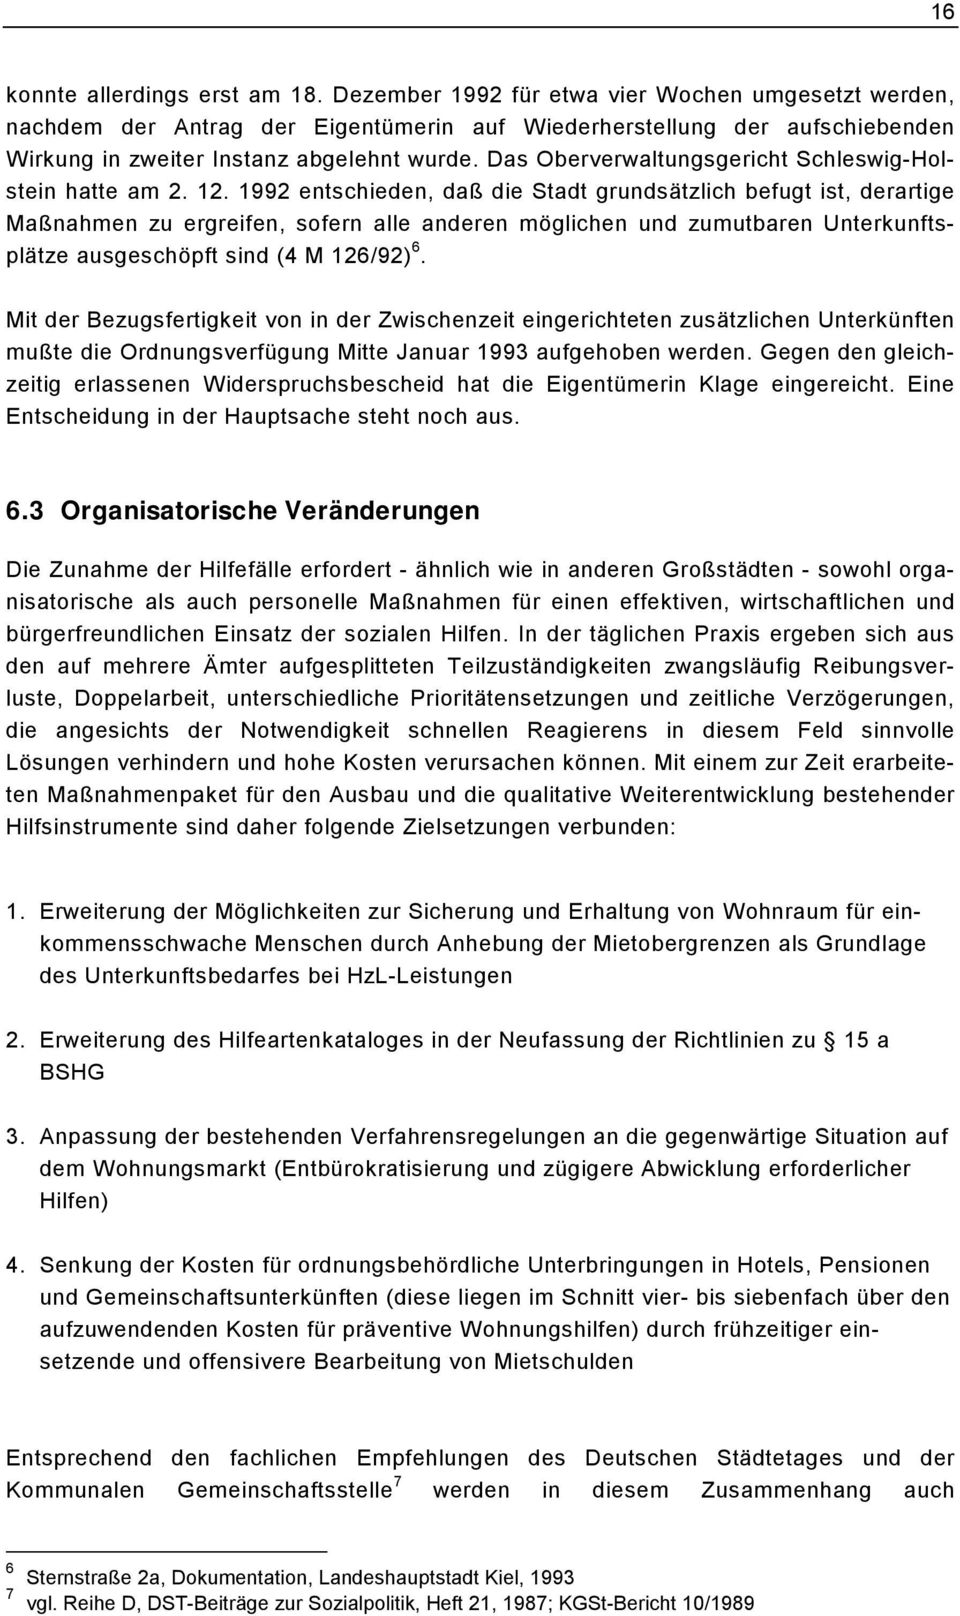 Das Oberverwaltungsgericht Schleswig-Holstein hatte am 2. 12.